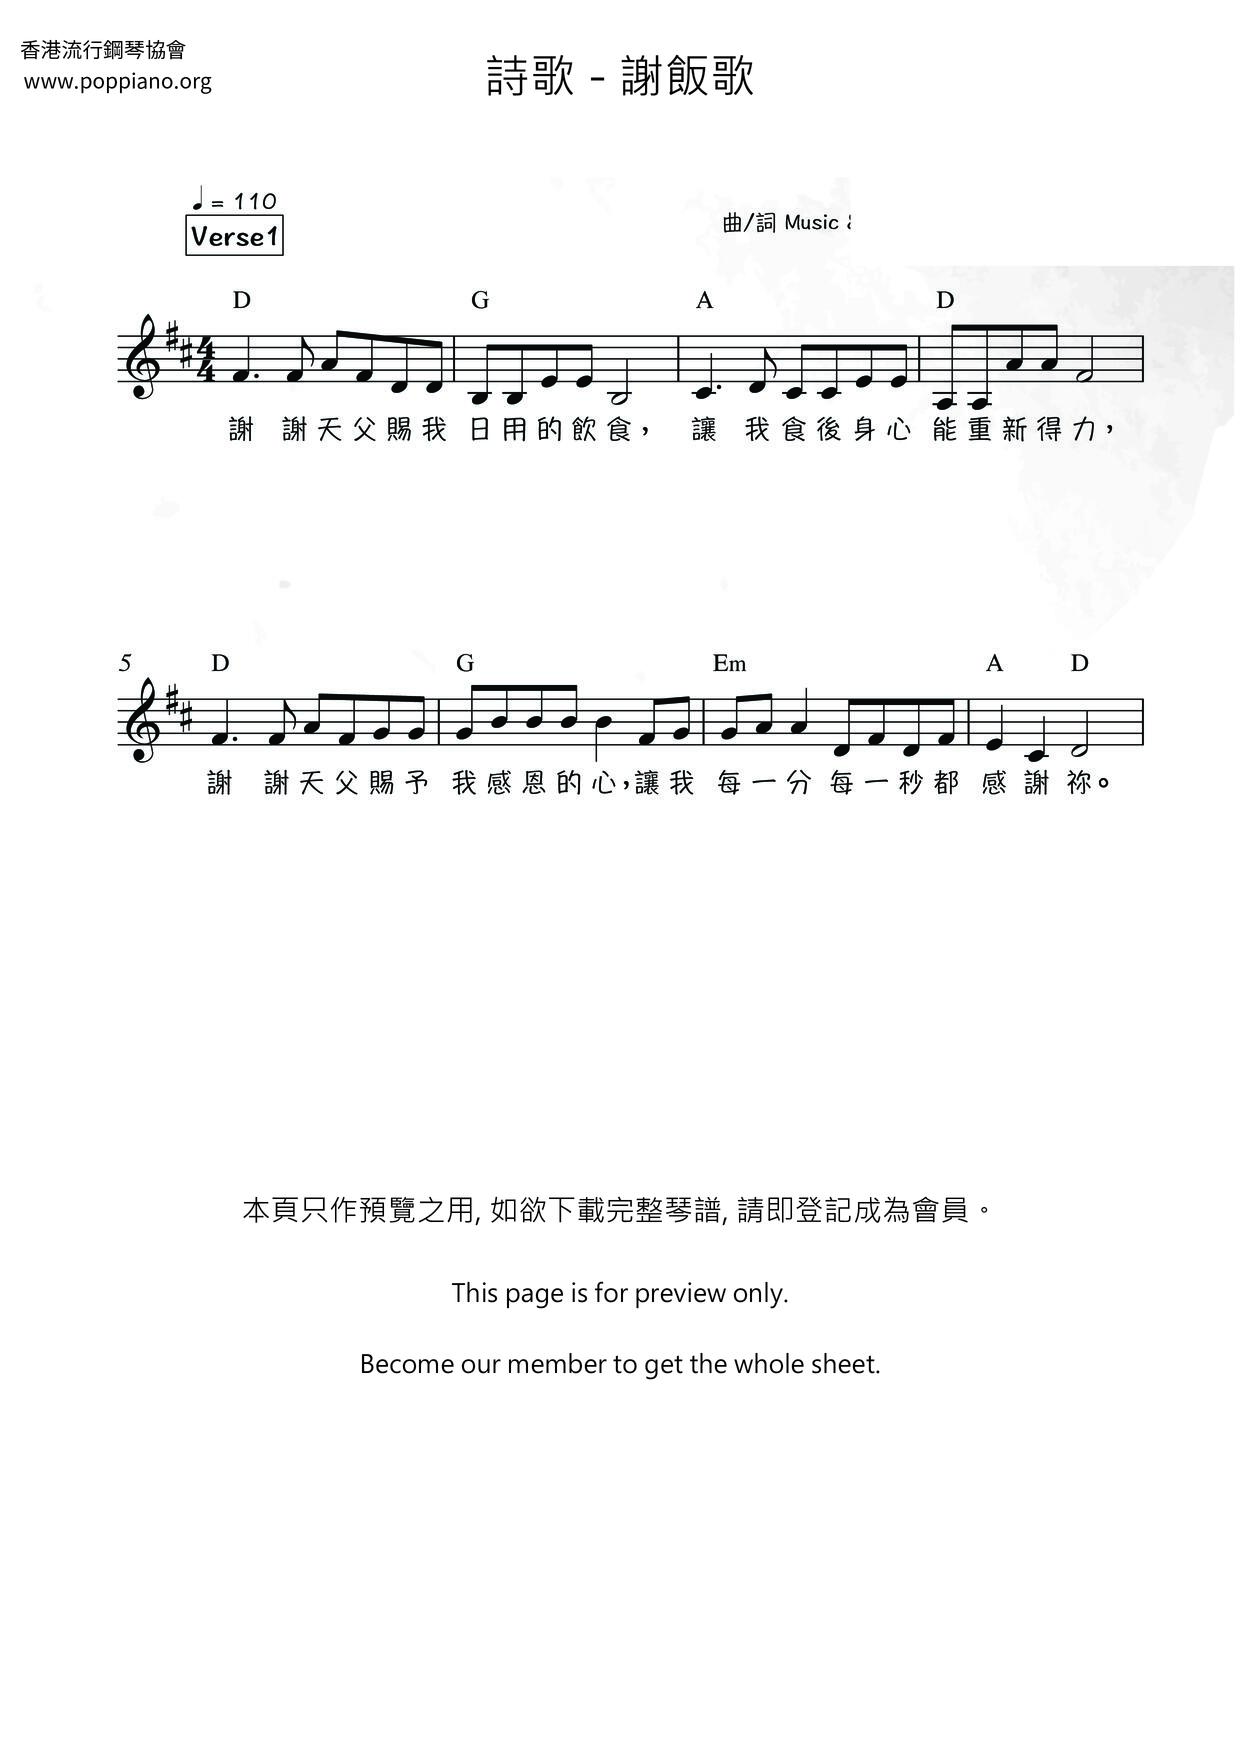 Xie Fange Score